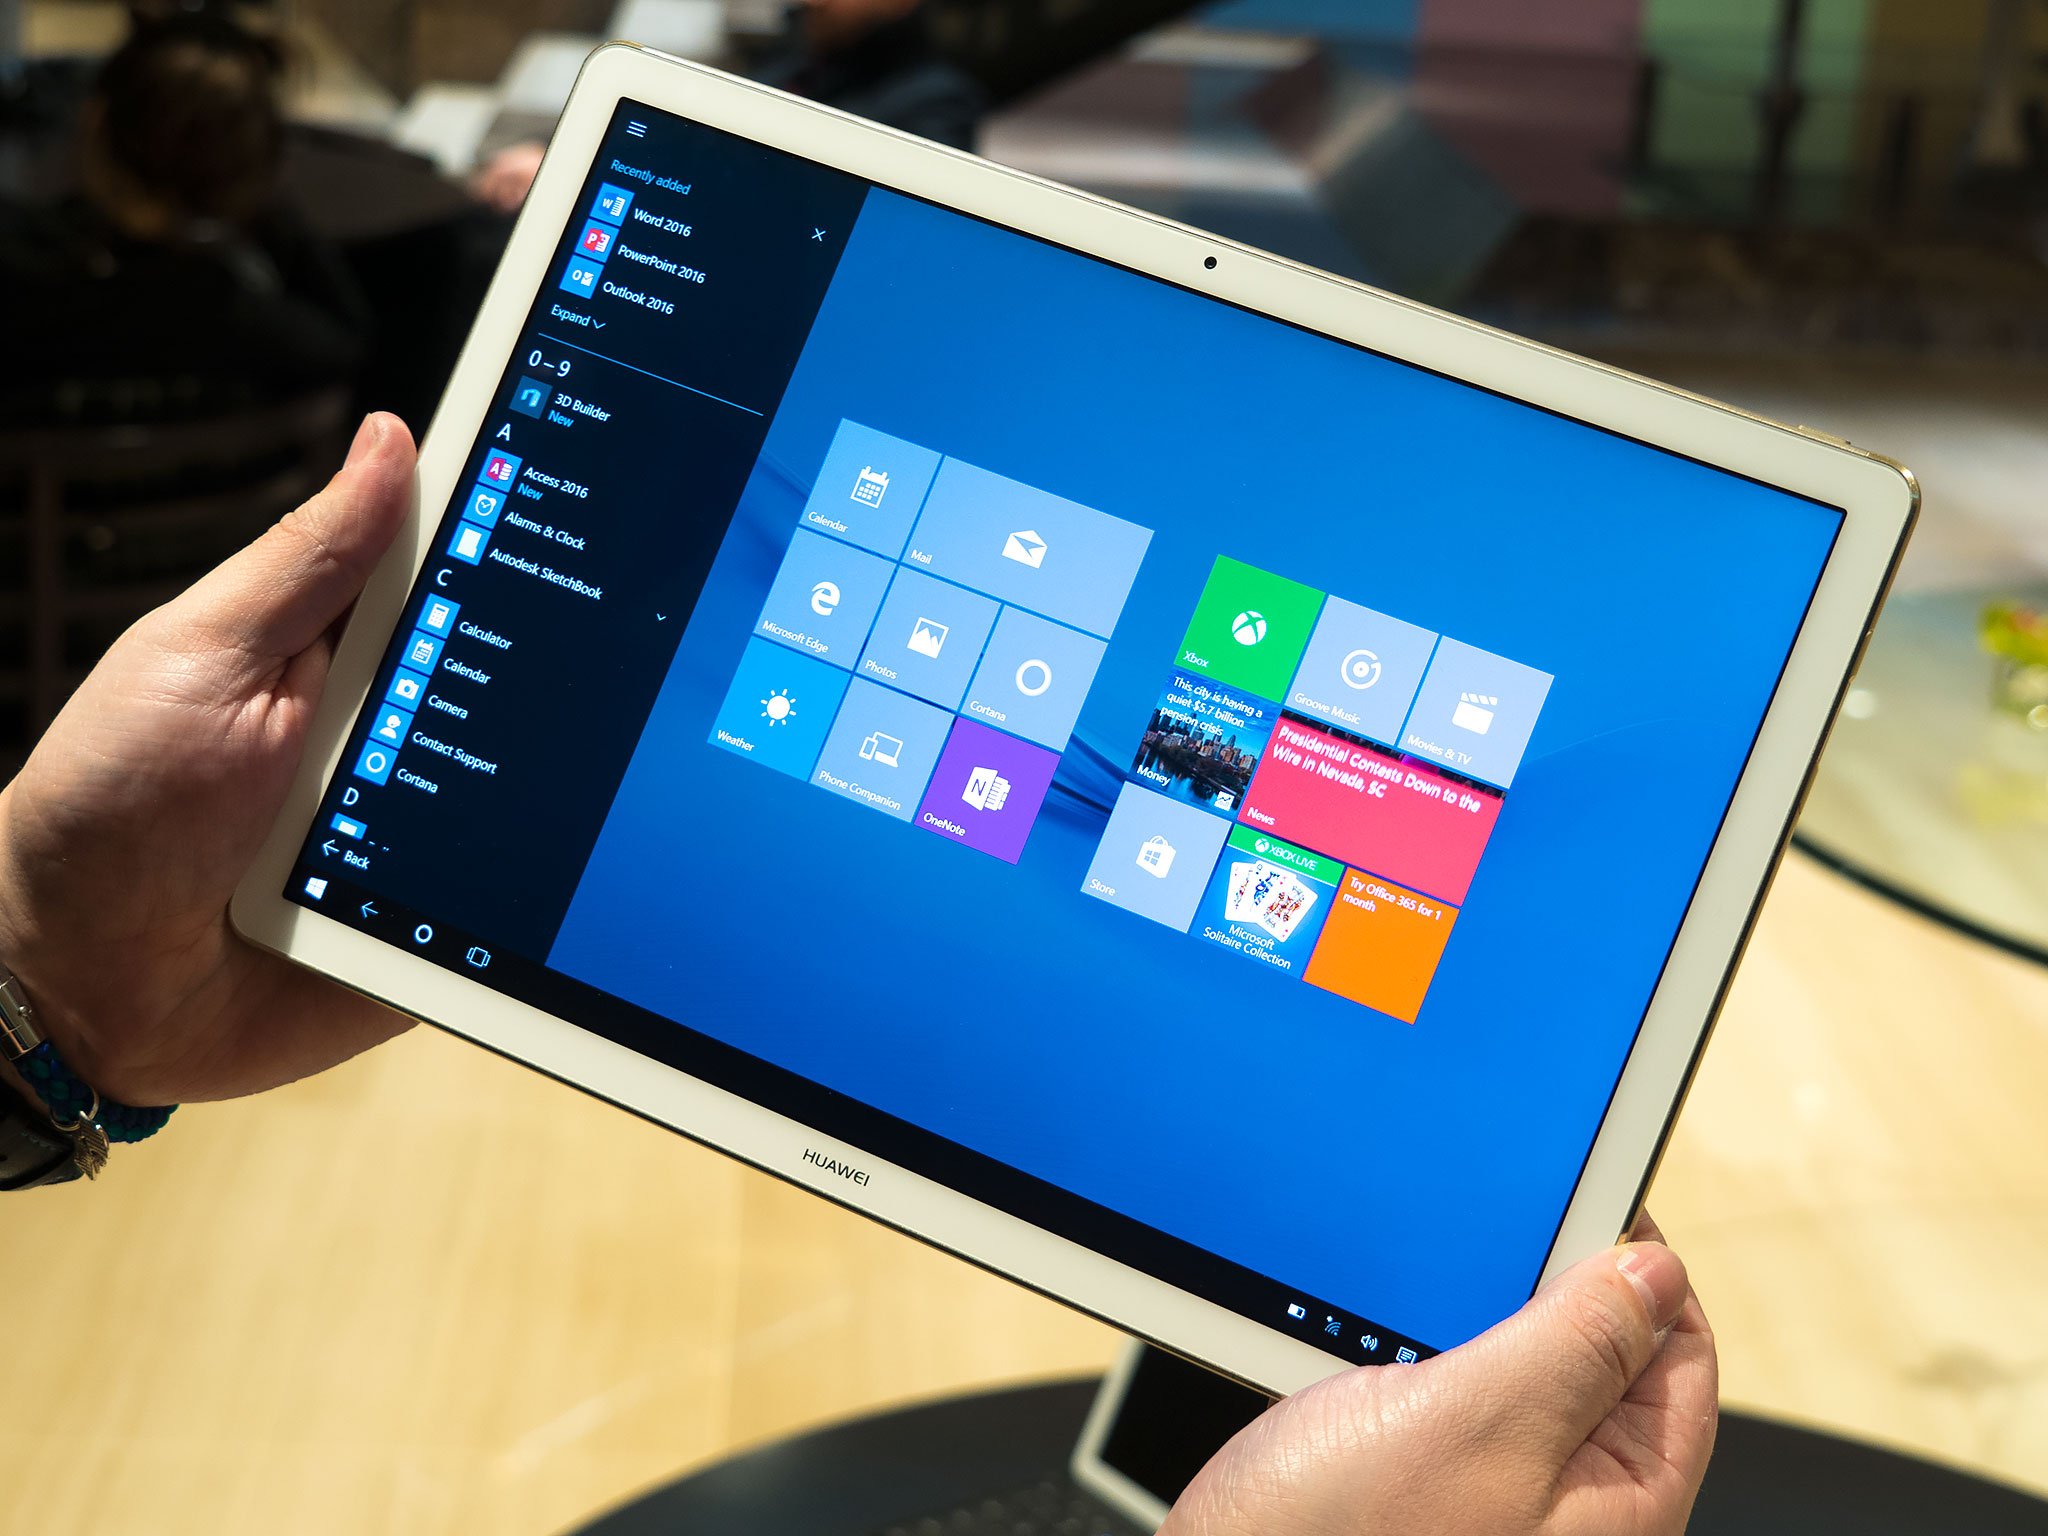 Планшет на виндовс 10 с клавиатурой. Планшет на виндовс 10. Планшет ноутбук виндовс 10. Windows 10 Tablet Microsoft. Microsoft планшет Windows 10s.